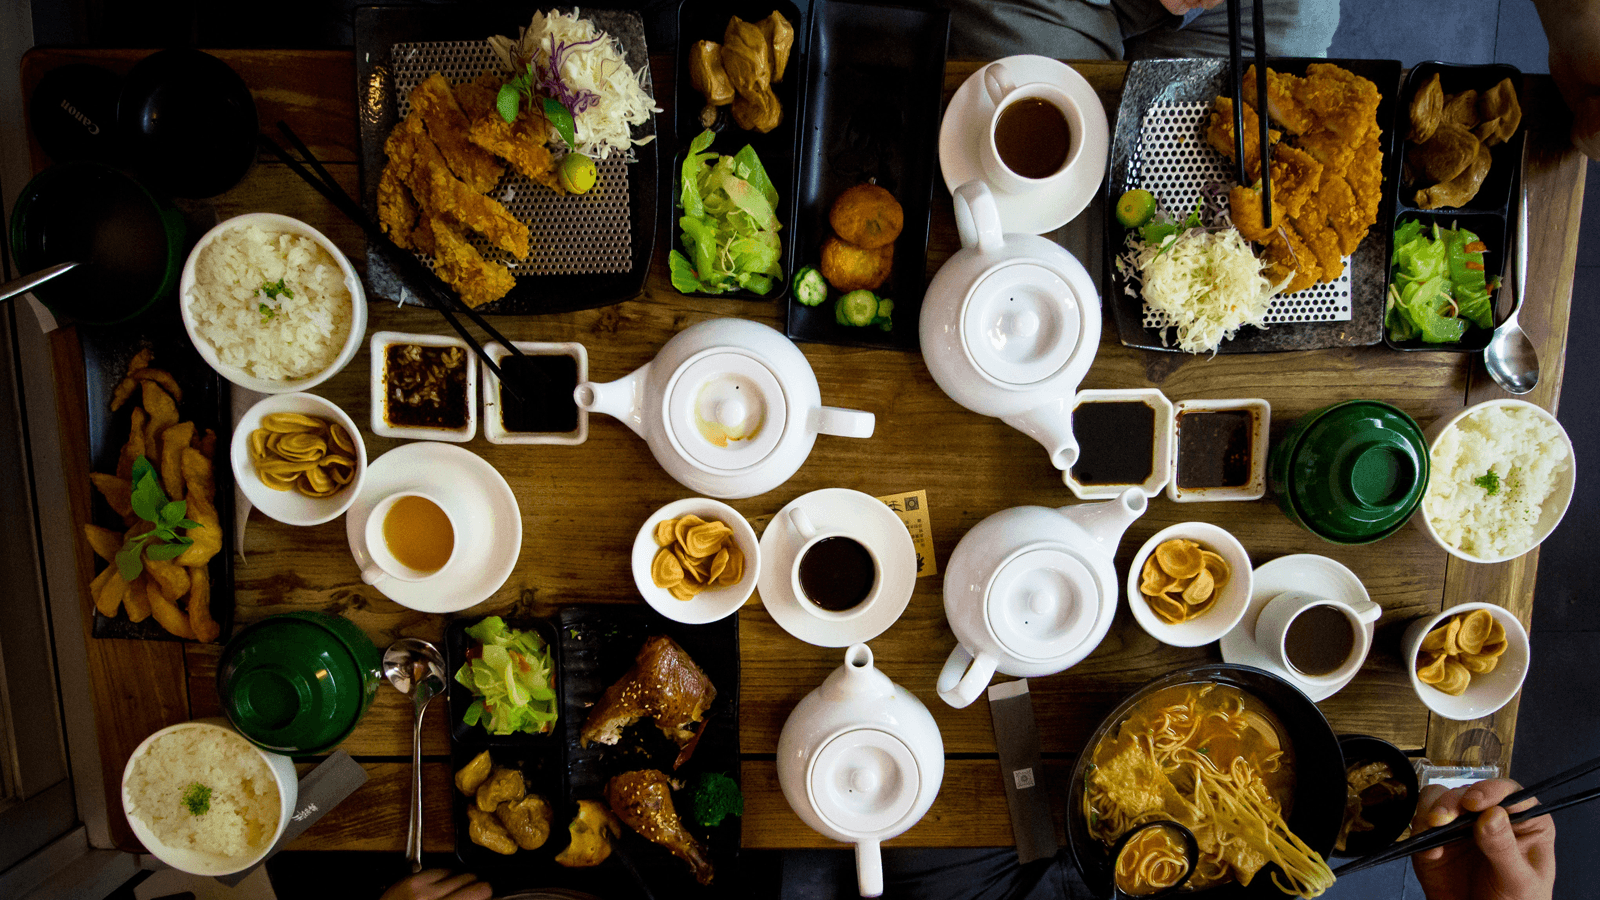 Bữa cơm gia đình hàng ngày là một truyền thống văn hóa đẹp của không chỉ người Việt Nam mà còn rất nhiều quốc khác trên thế giới. Vì sao bữa cơm gia đình lại quan trọng đến vậy? Hãy cùng GenVita tìm hiểu nhé!